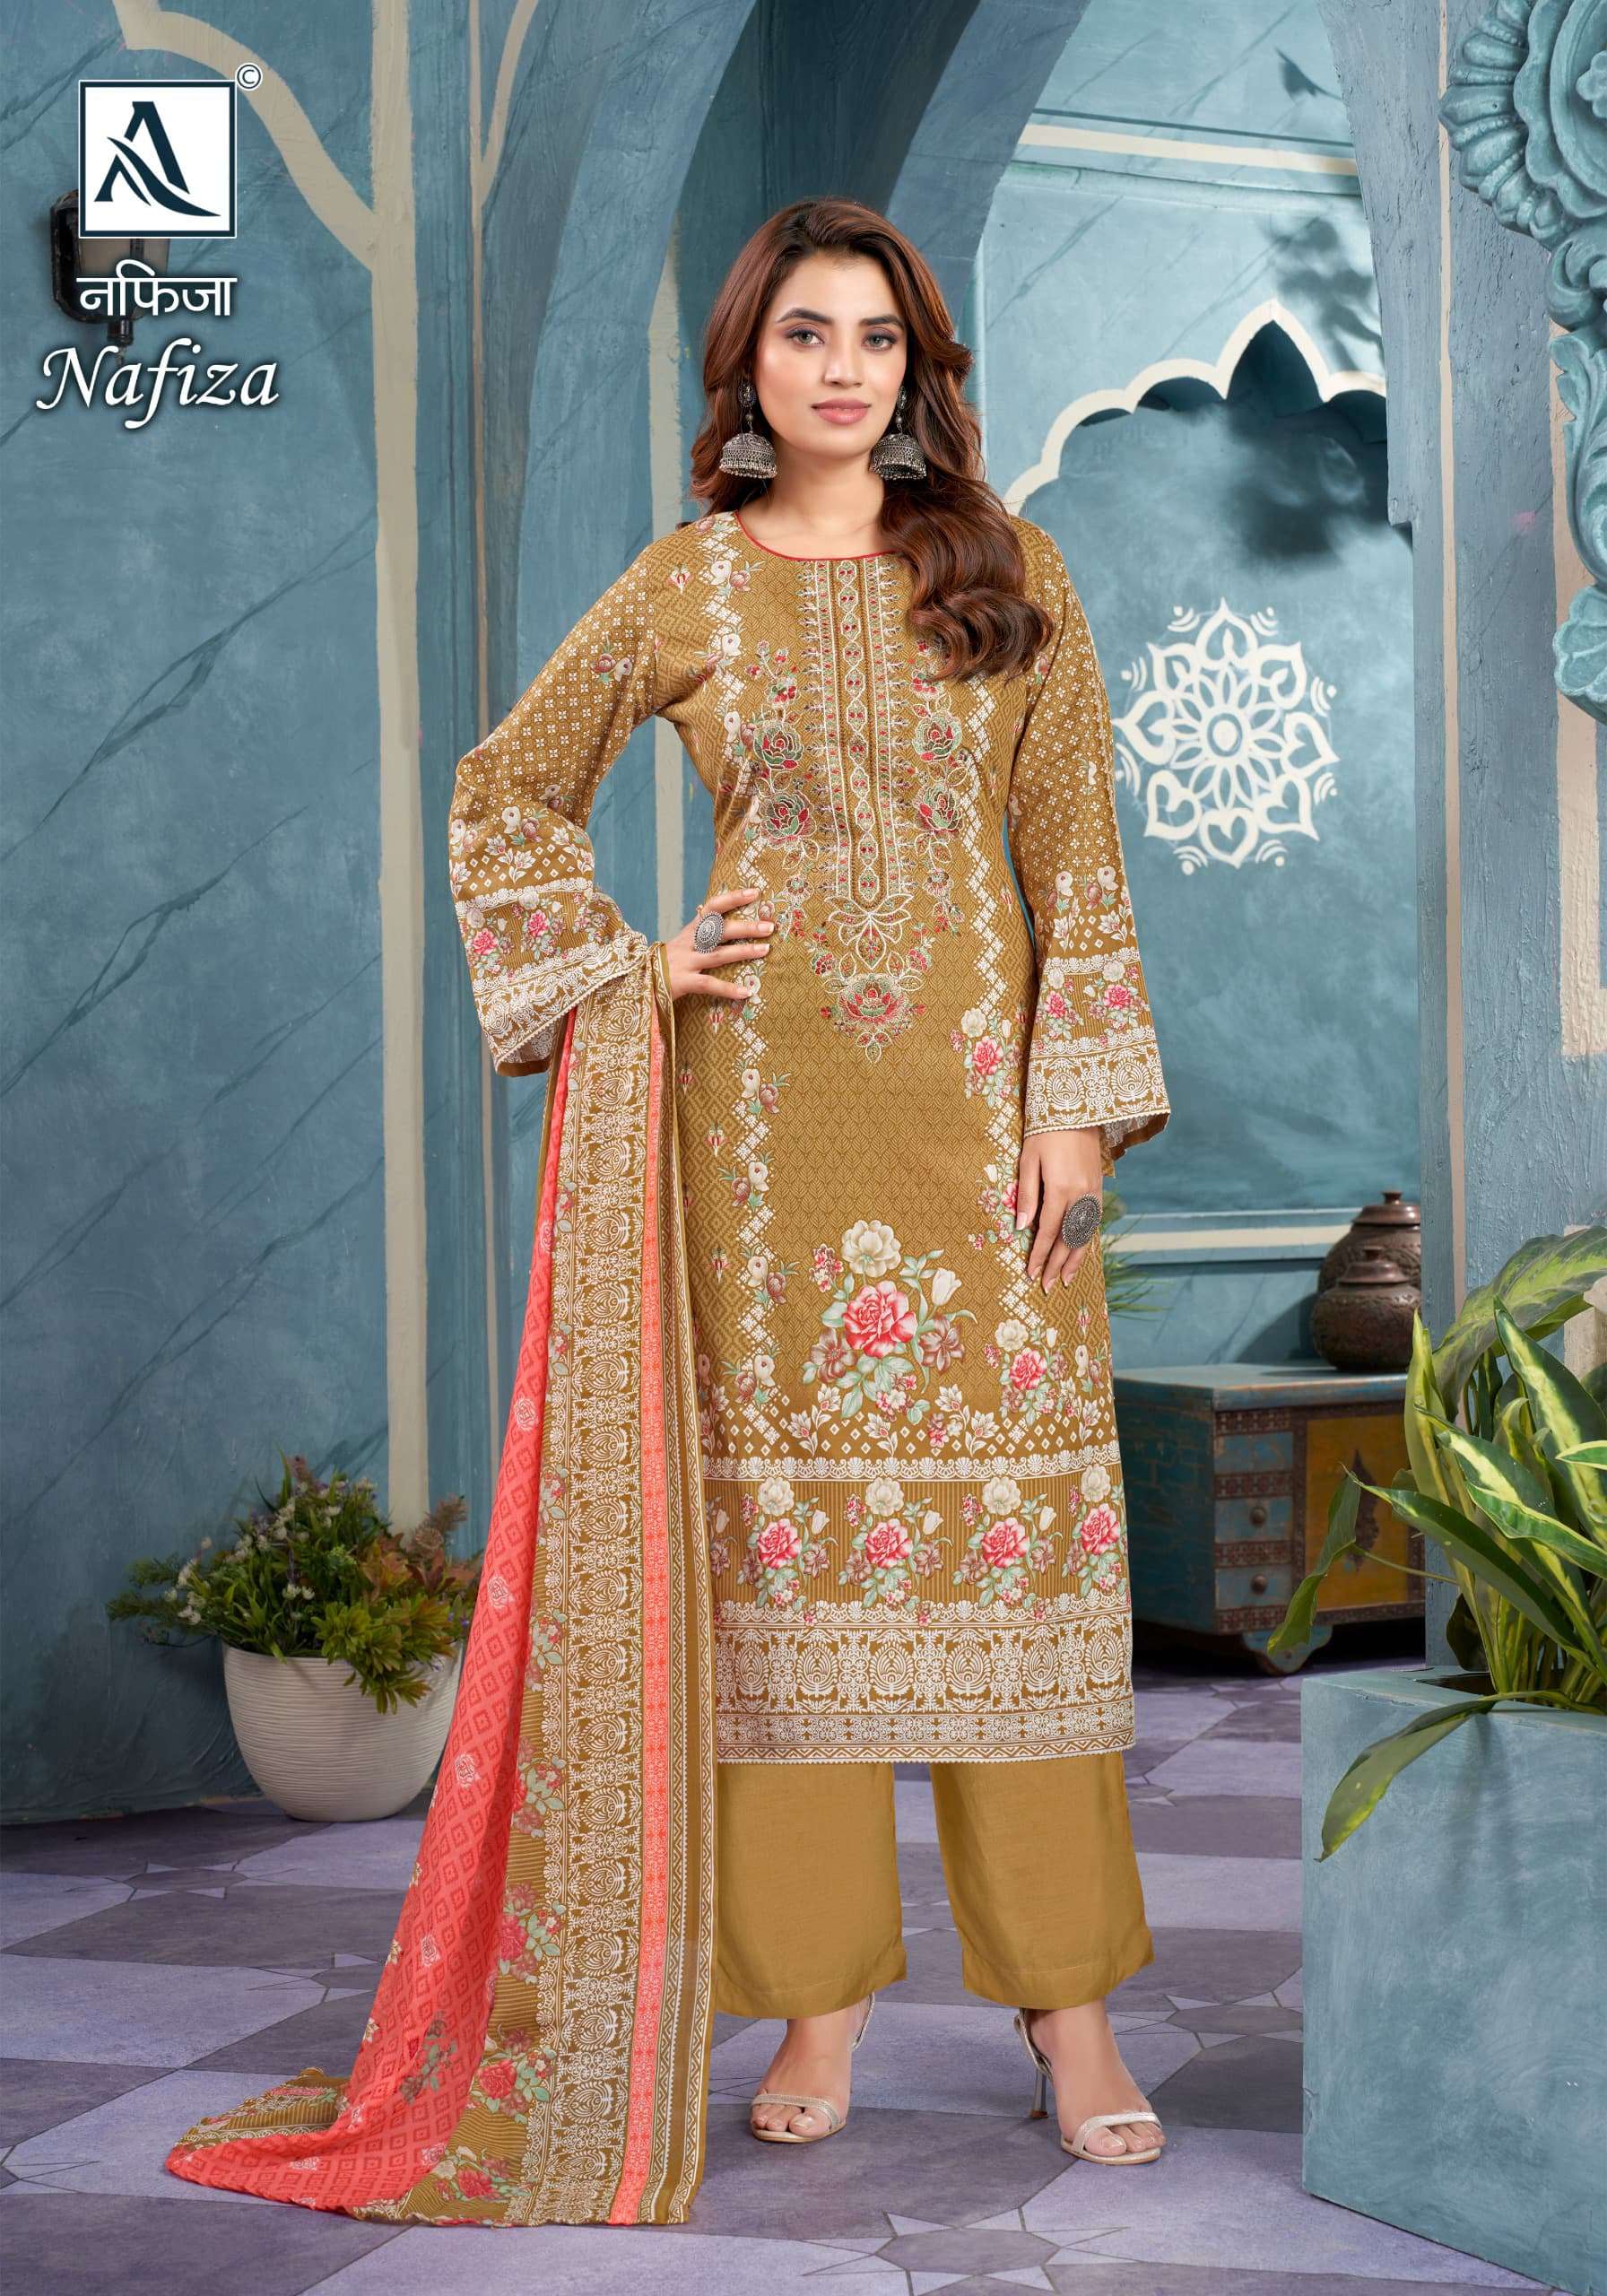 Alok Suit NAFIZA salwar kameez Wholesale catalog